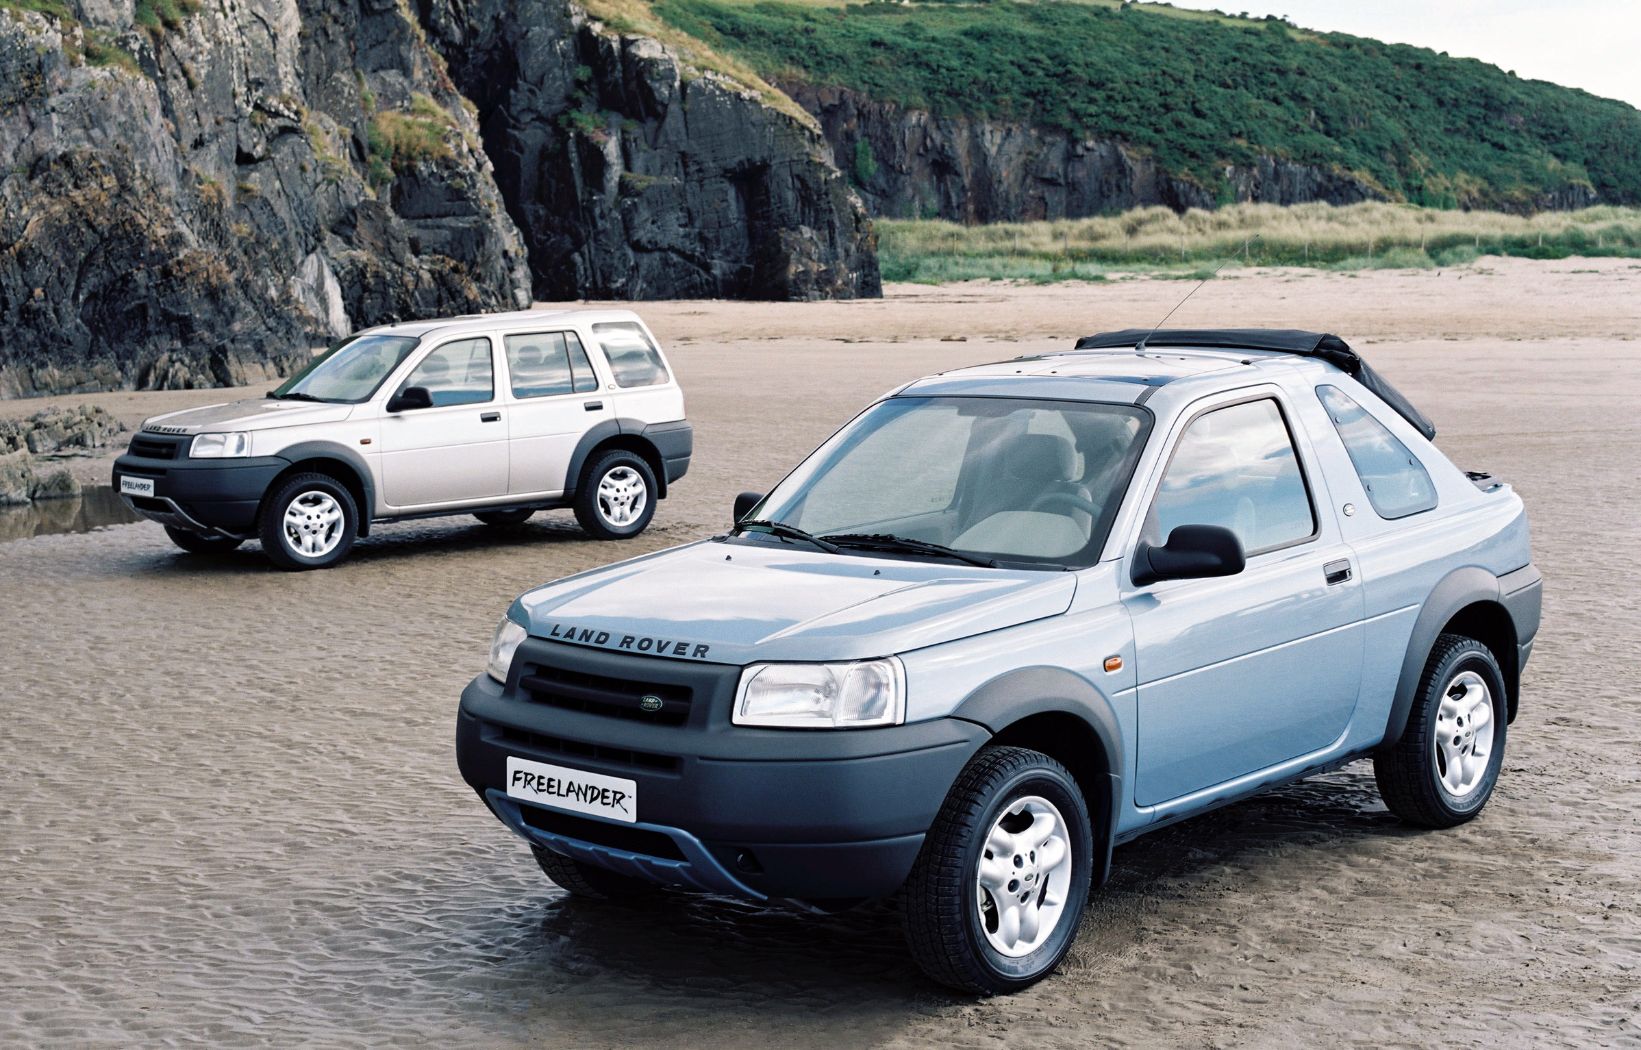 In dienst nemen Schrijf een brief misdrijf How the Freelander Reshaped Land Rover's Product Range - autoevolution